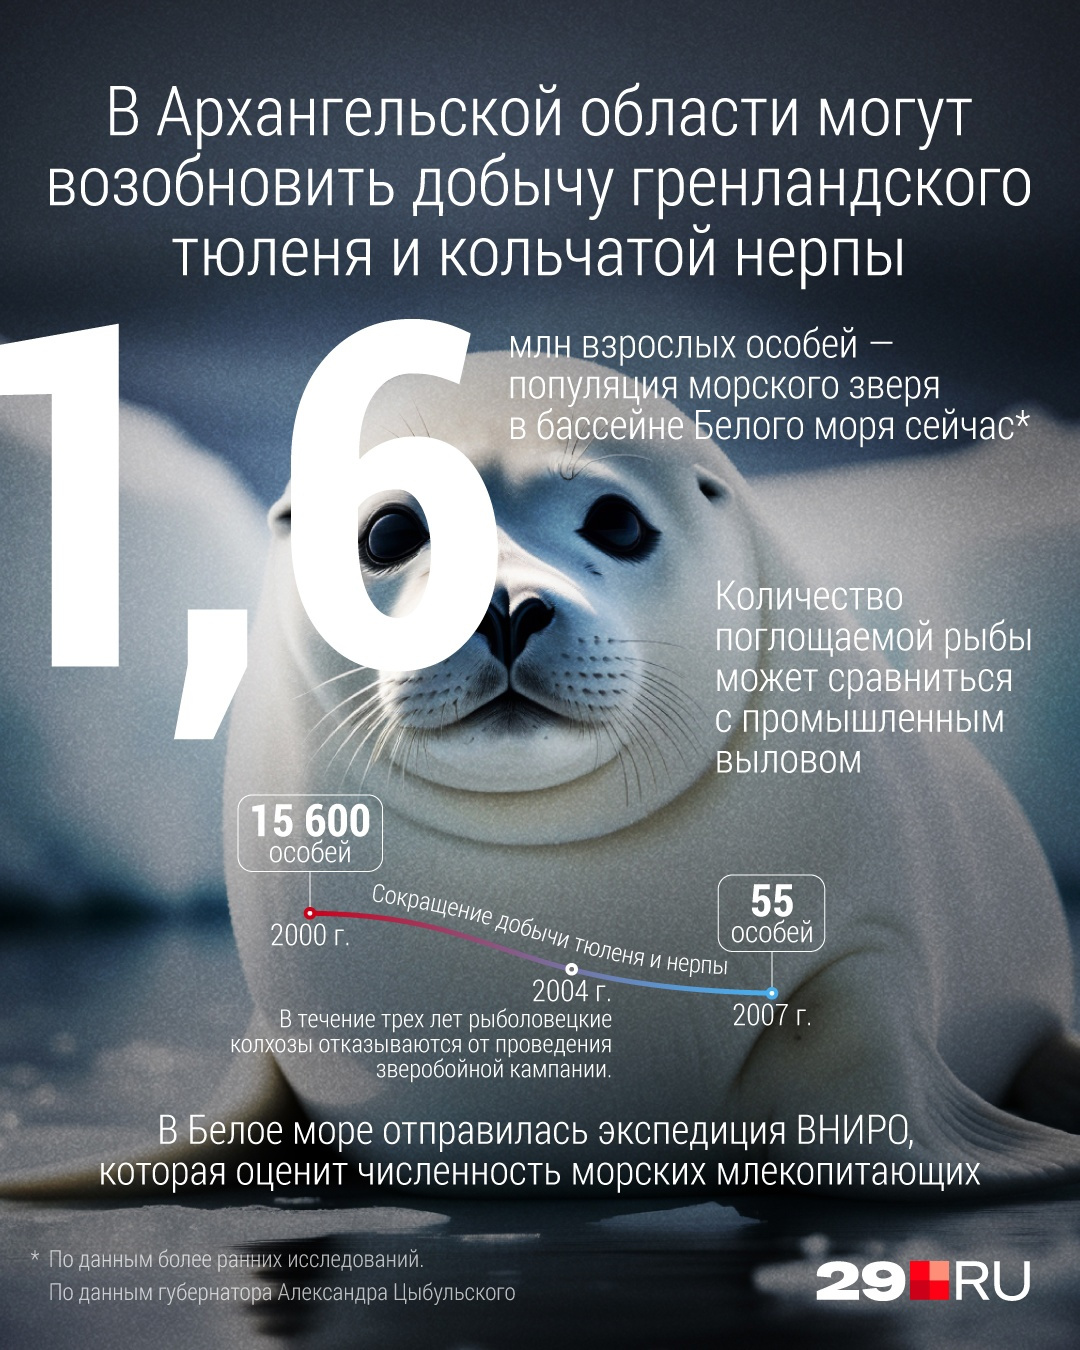 Такие данные о популяции тюленей озвучил Губернатор Поморья